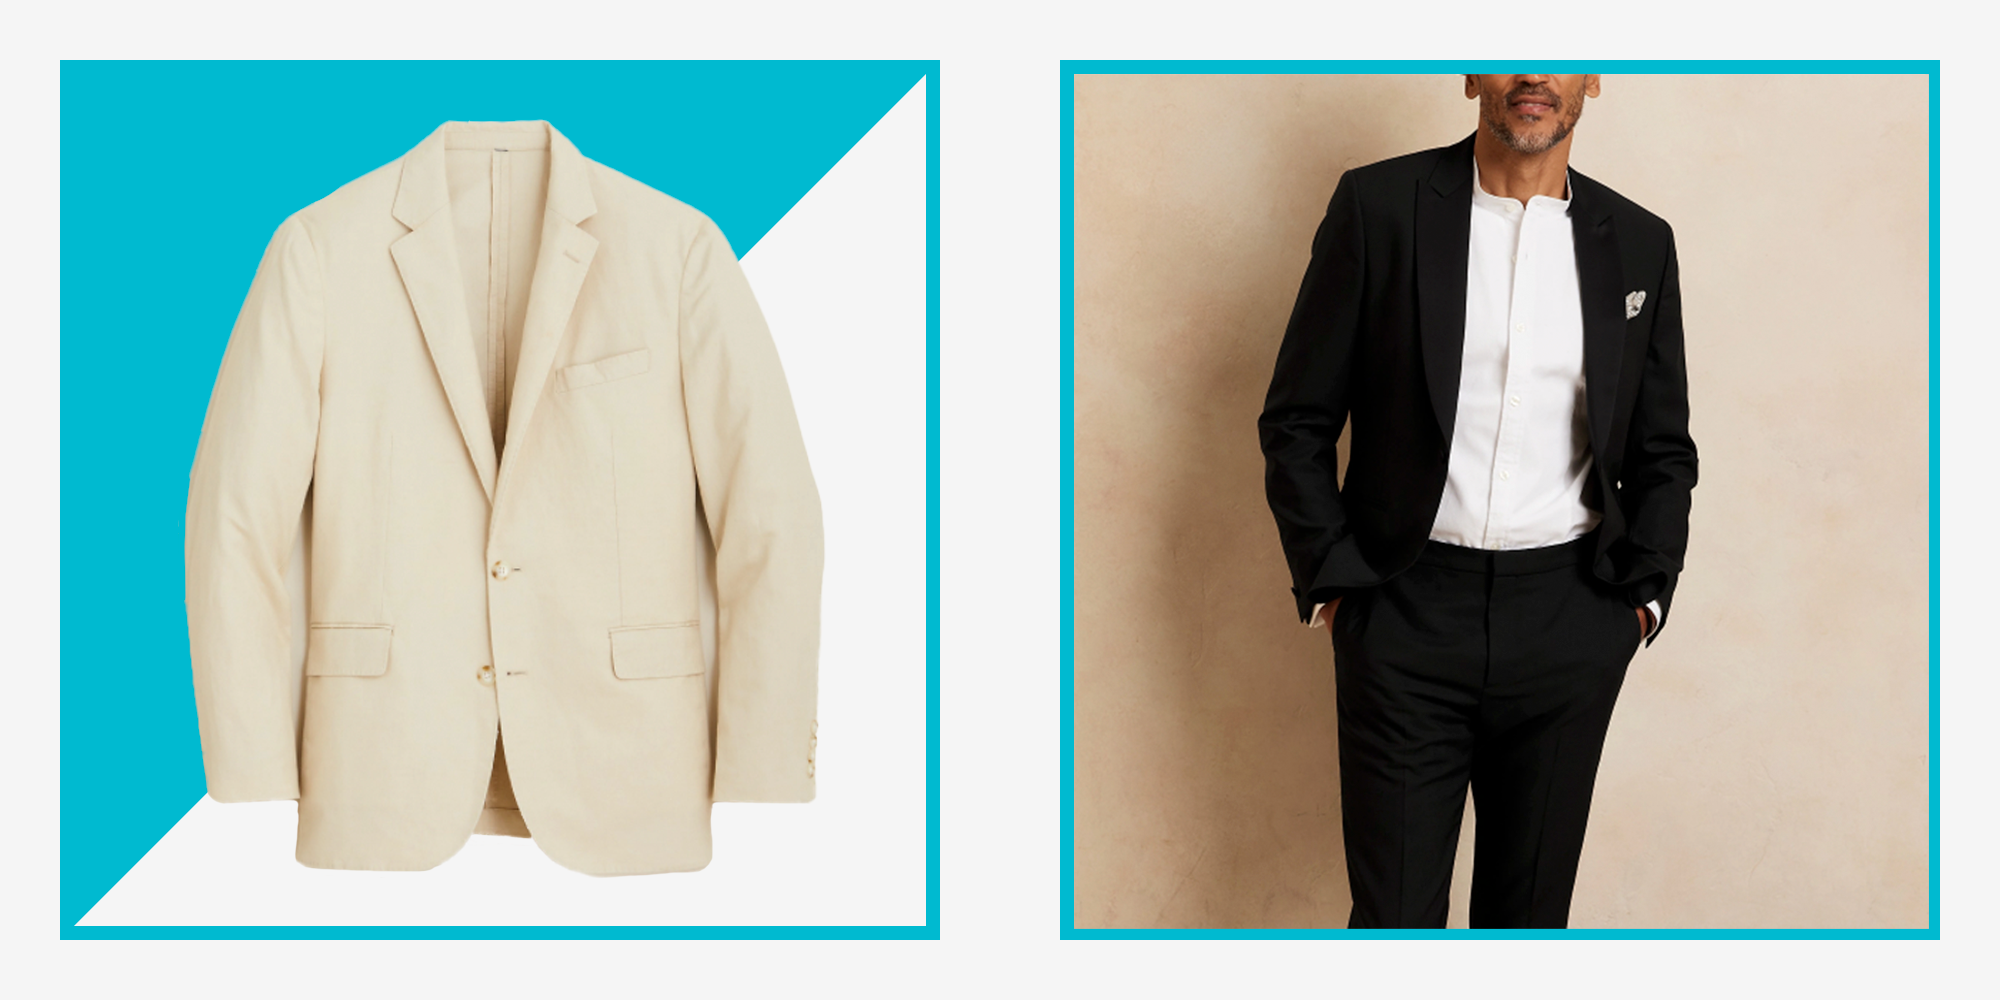 Men's Suits - Formal, Print, Tuxedo Suits & More